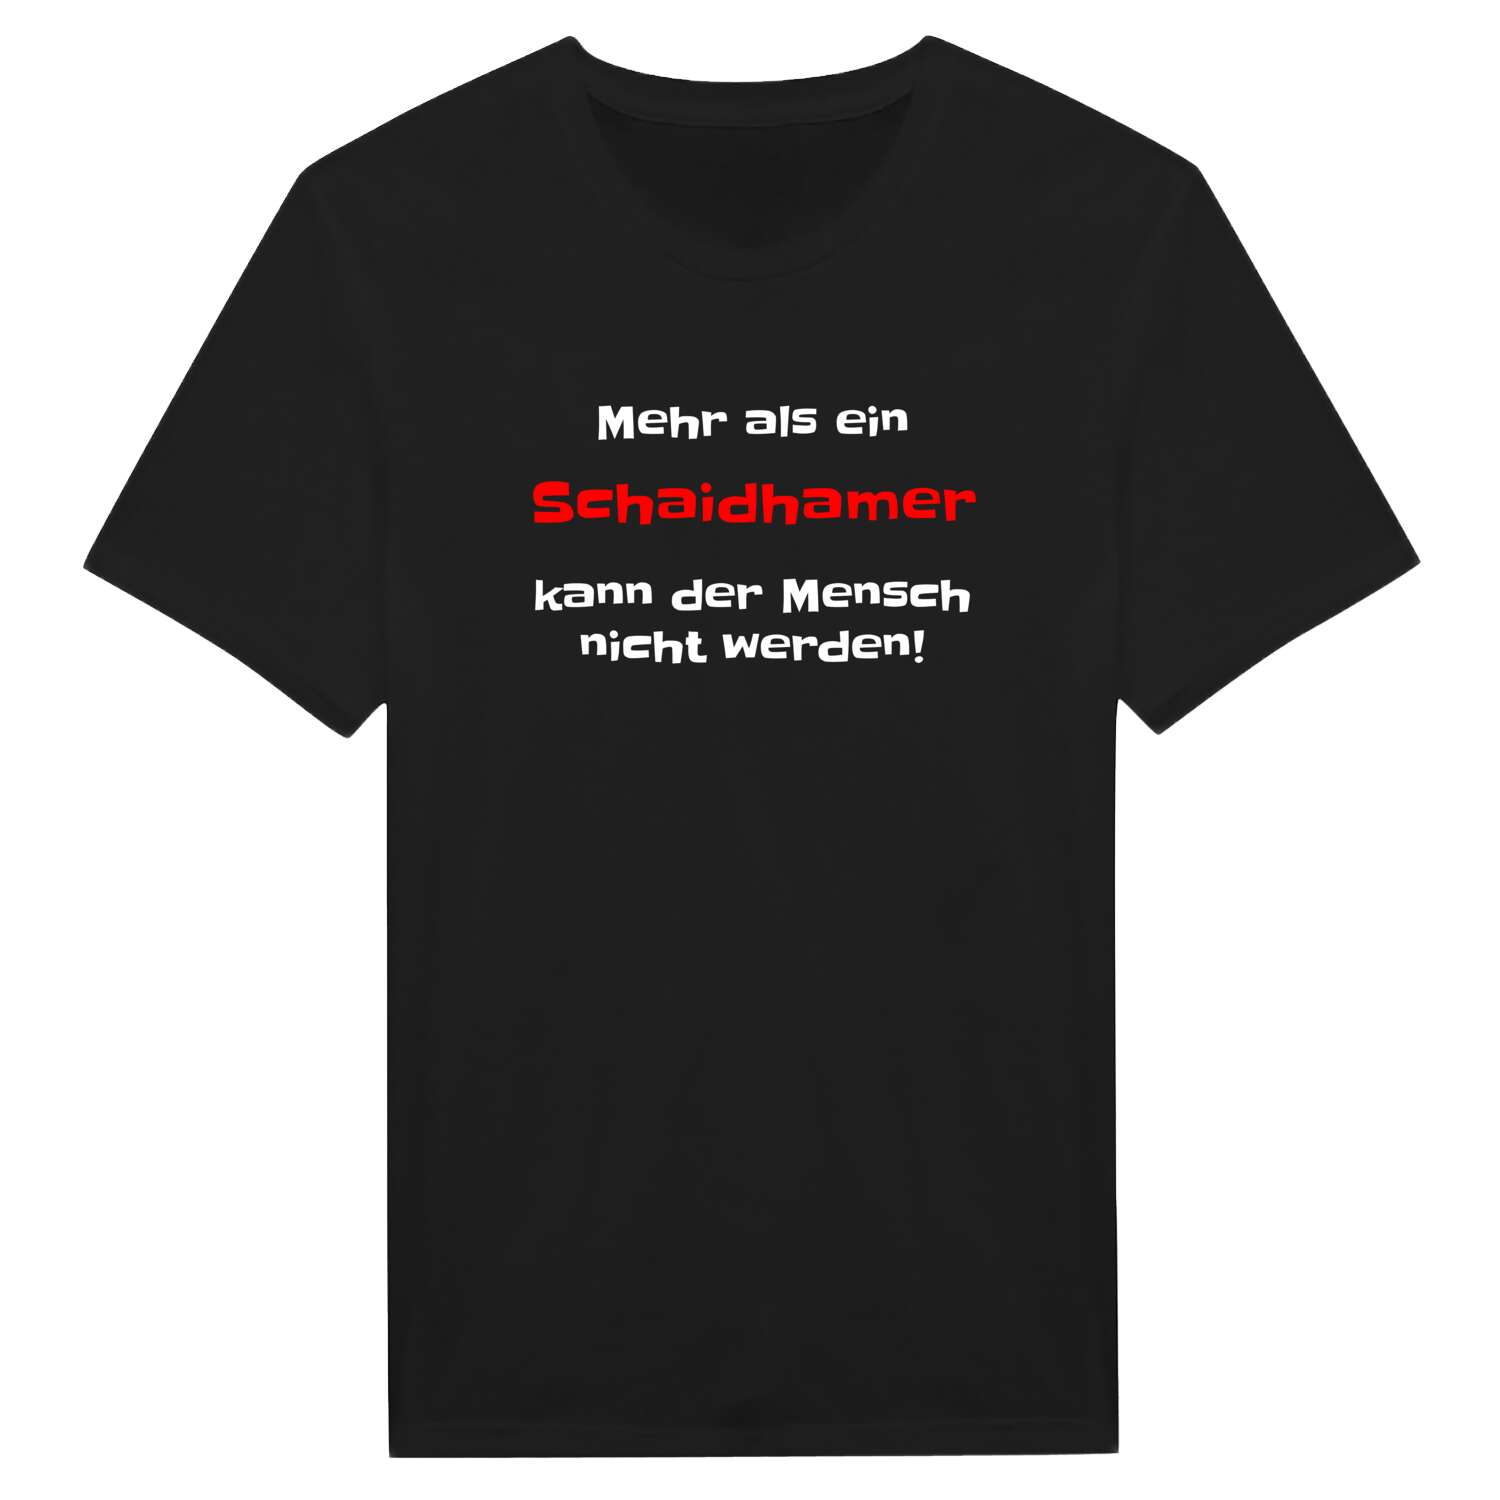 Schaidham T-Shirt »Mehr als ein«